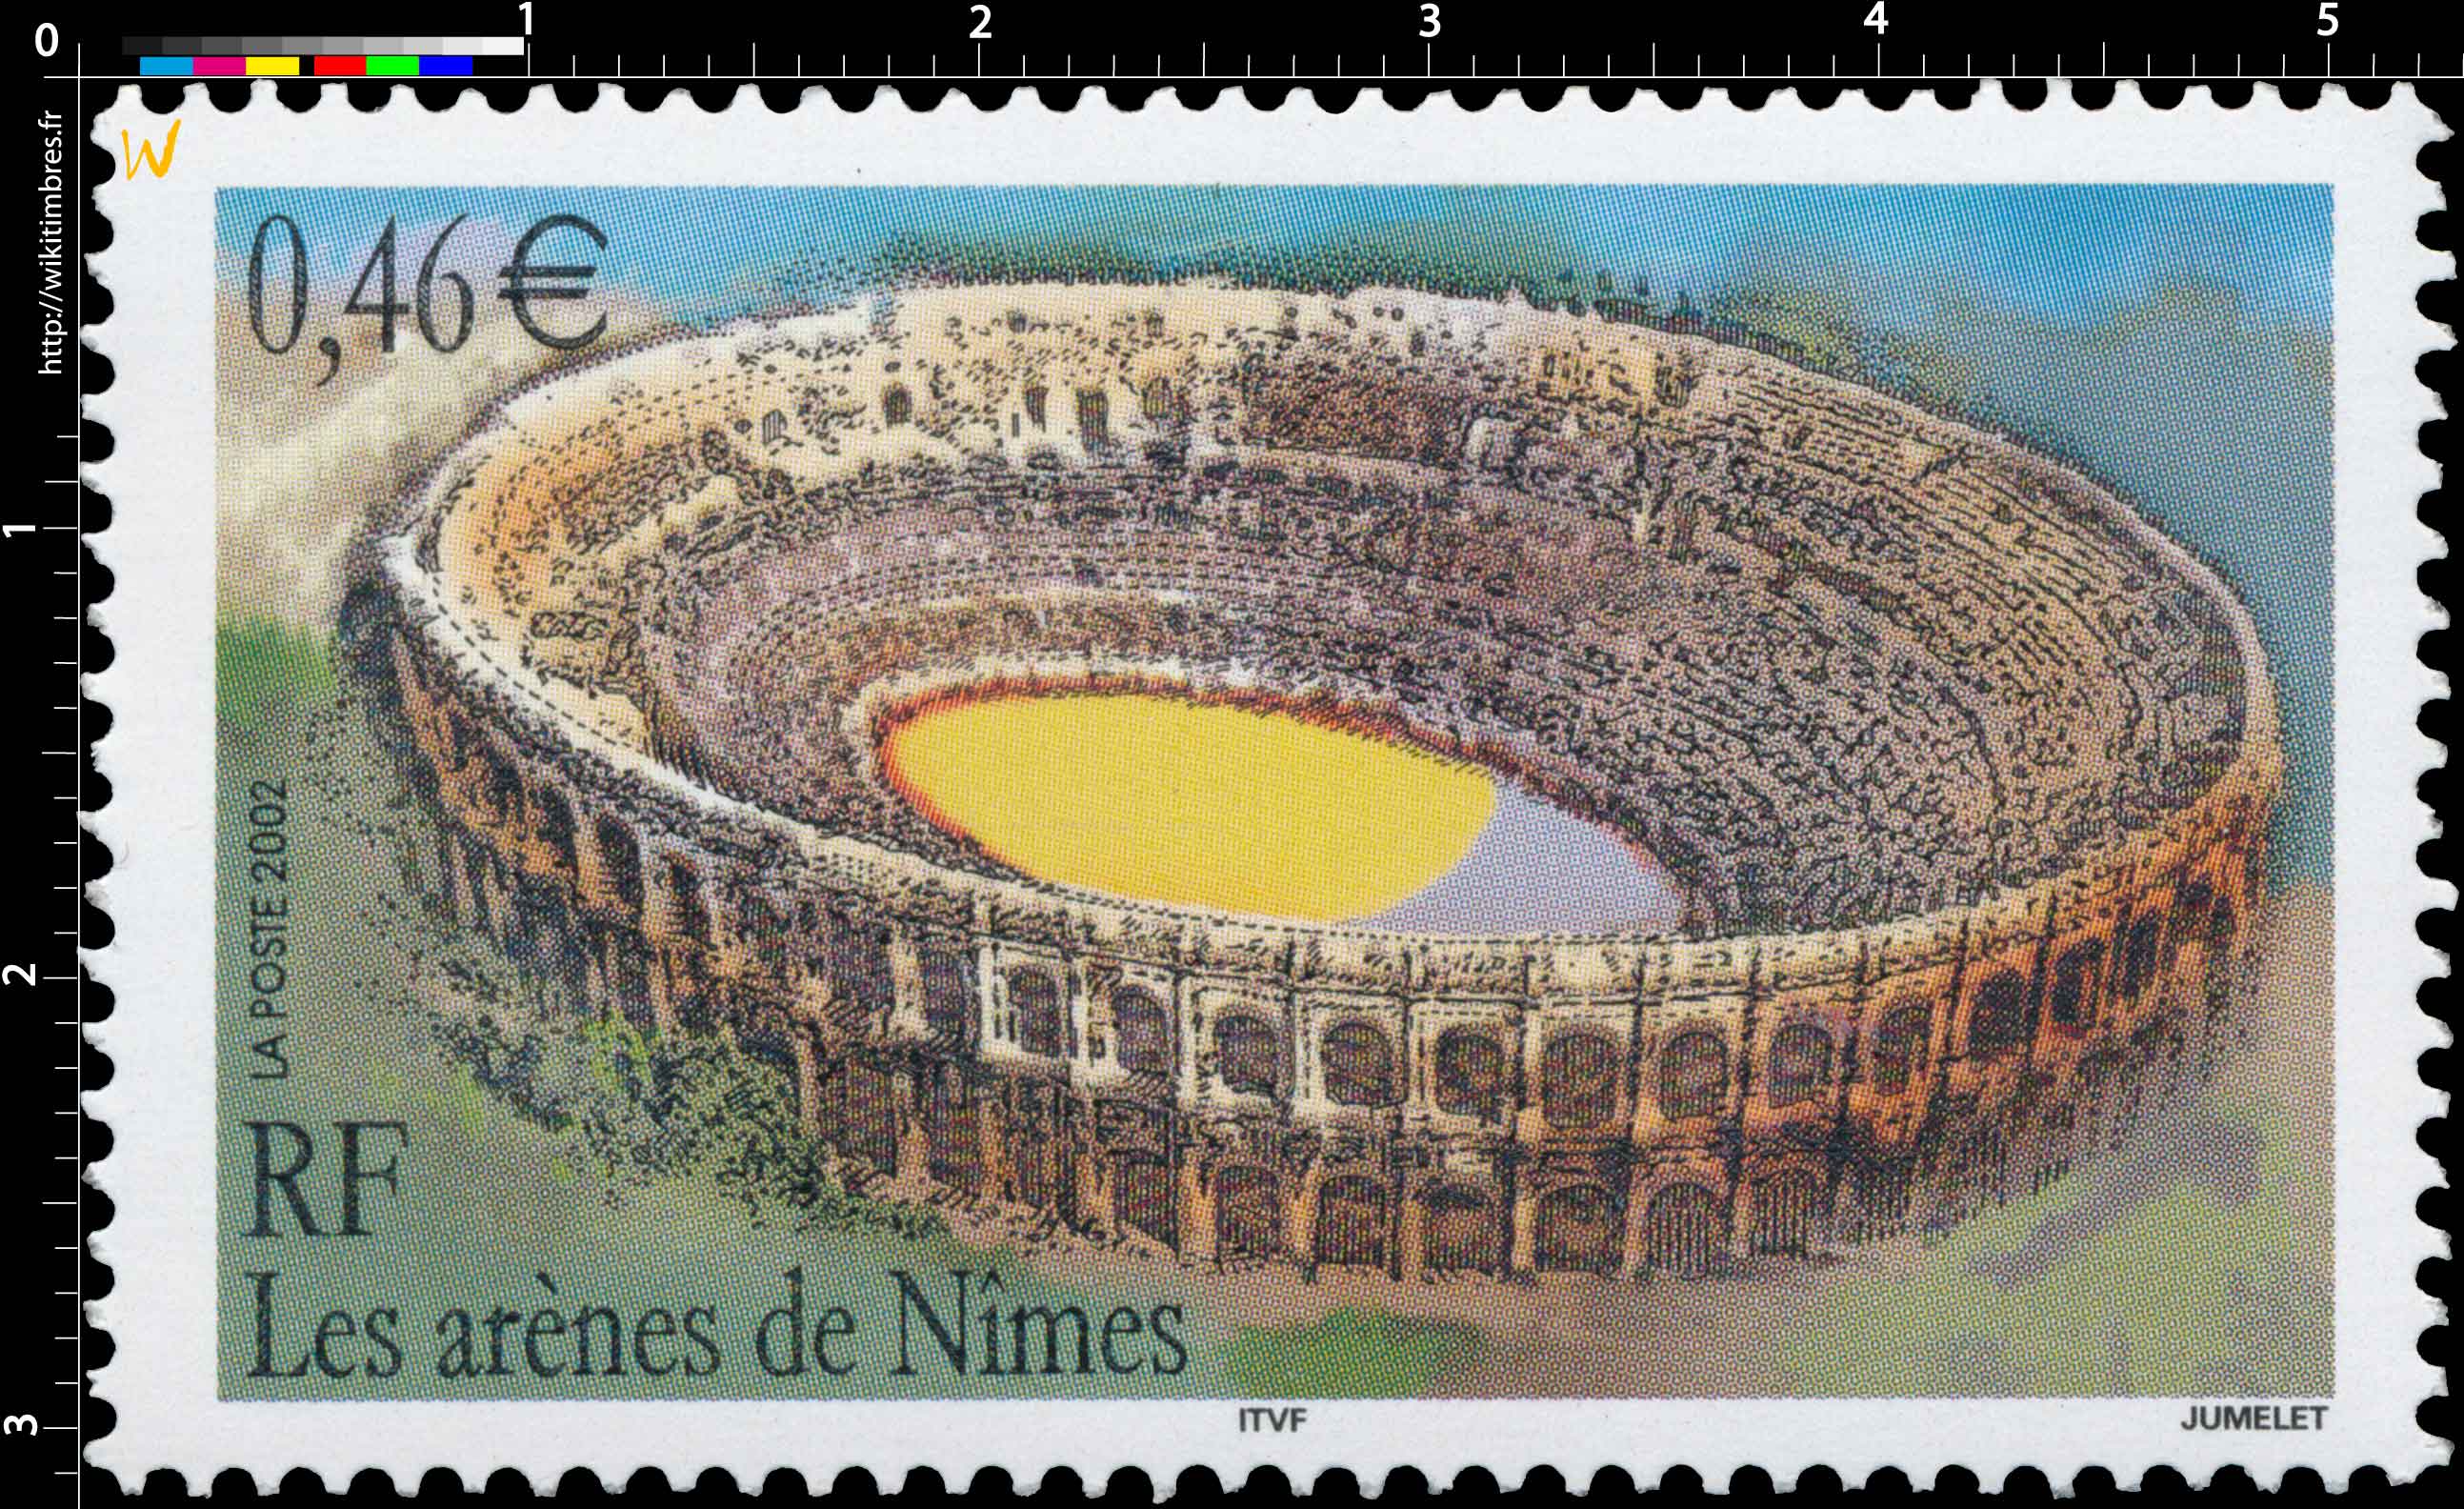 2002 Les arènes de Nîmes